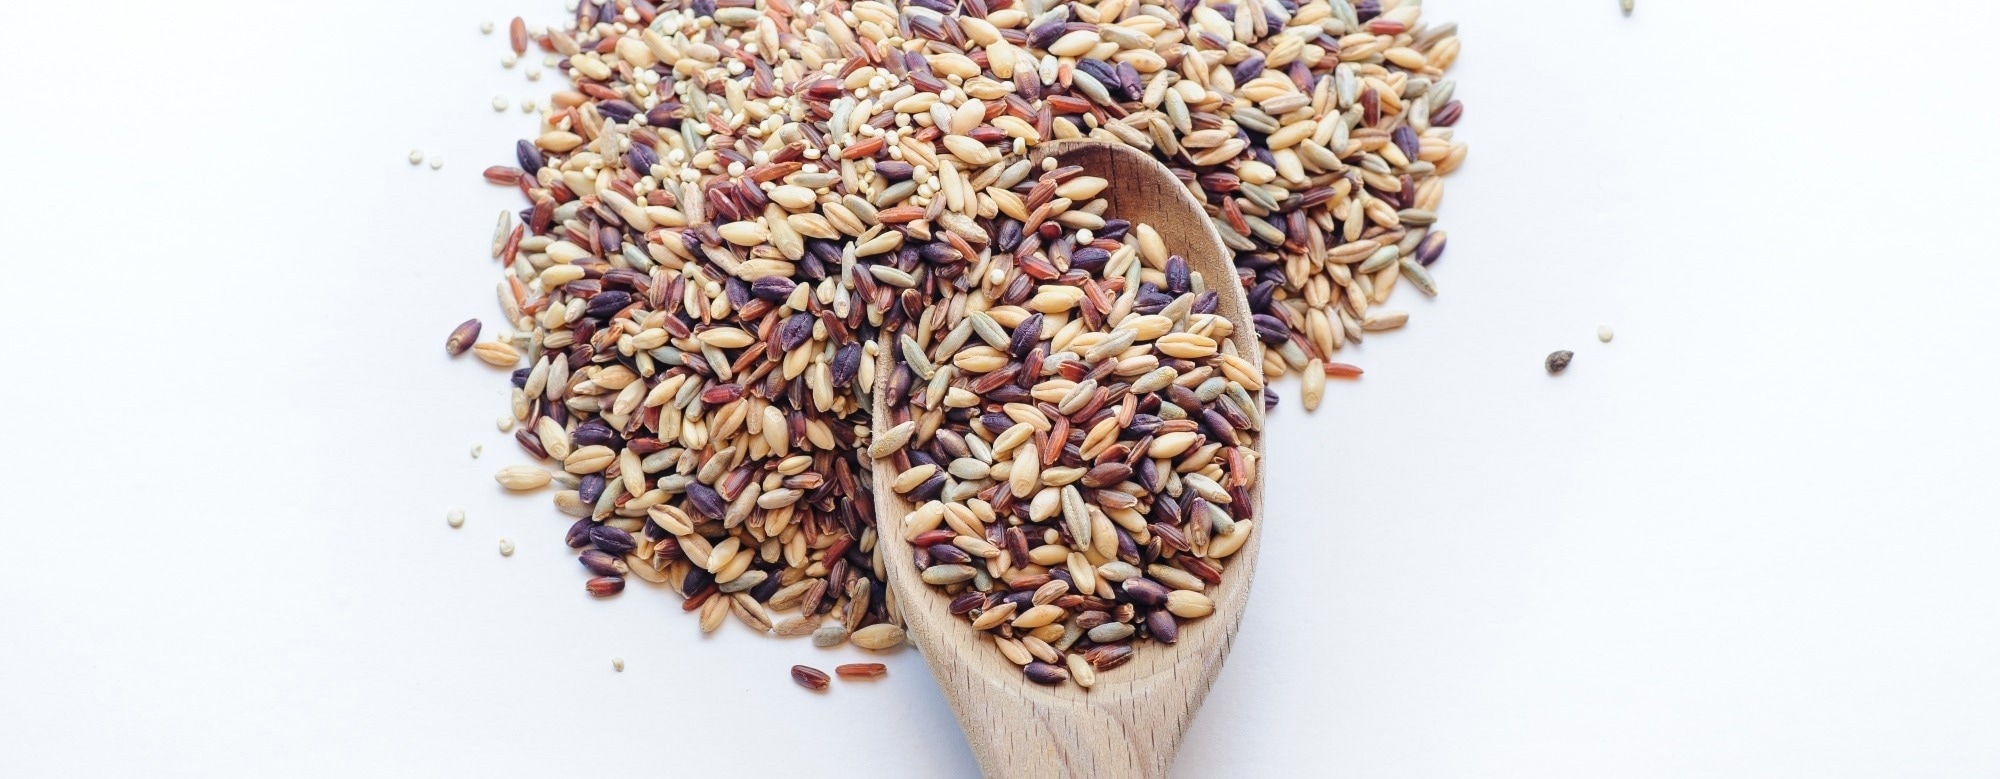 Ancient grains show promise for type 2 diabetes